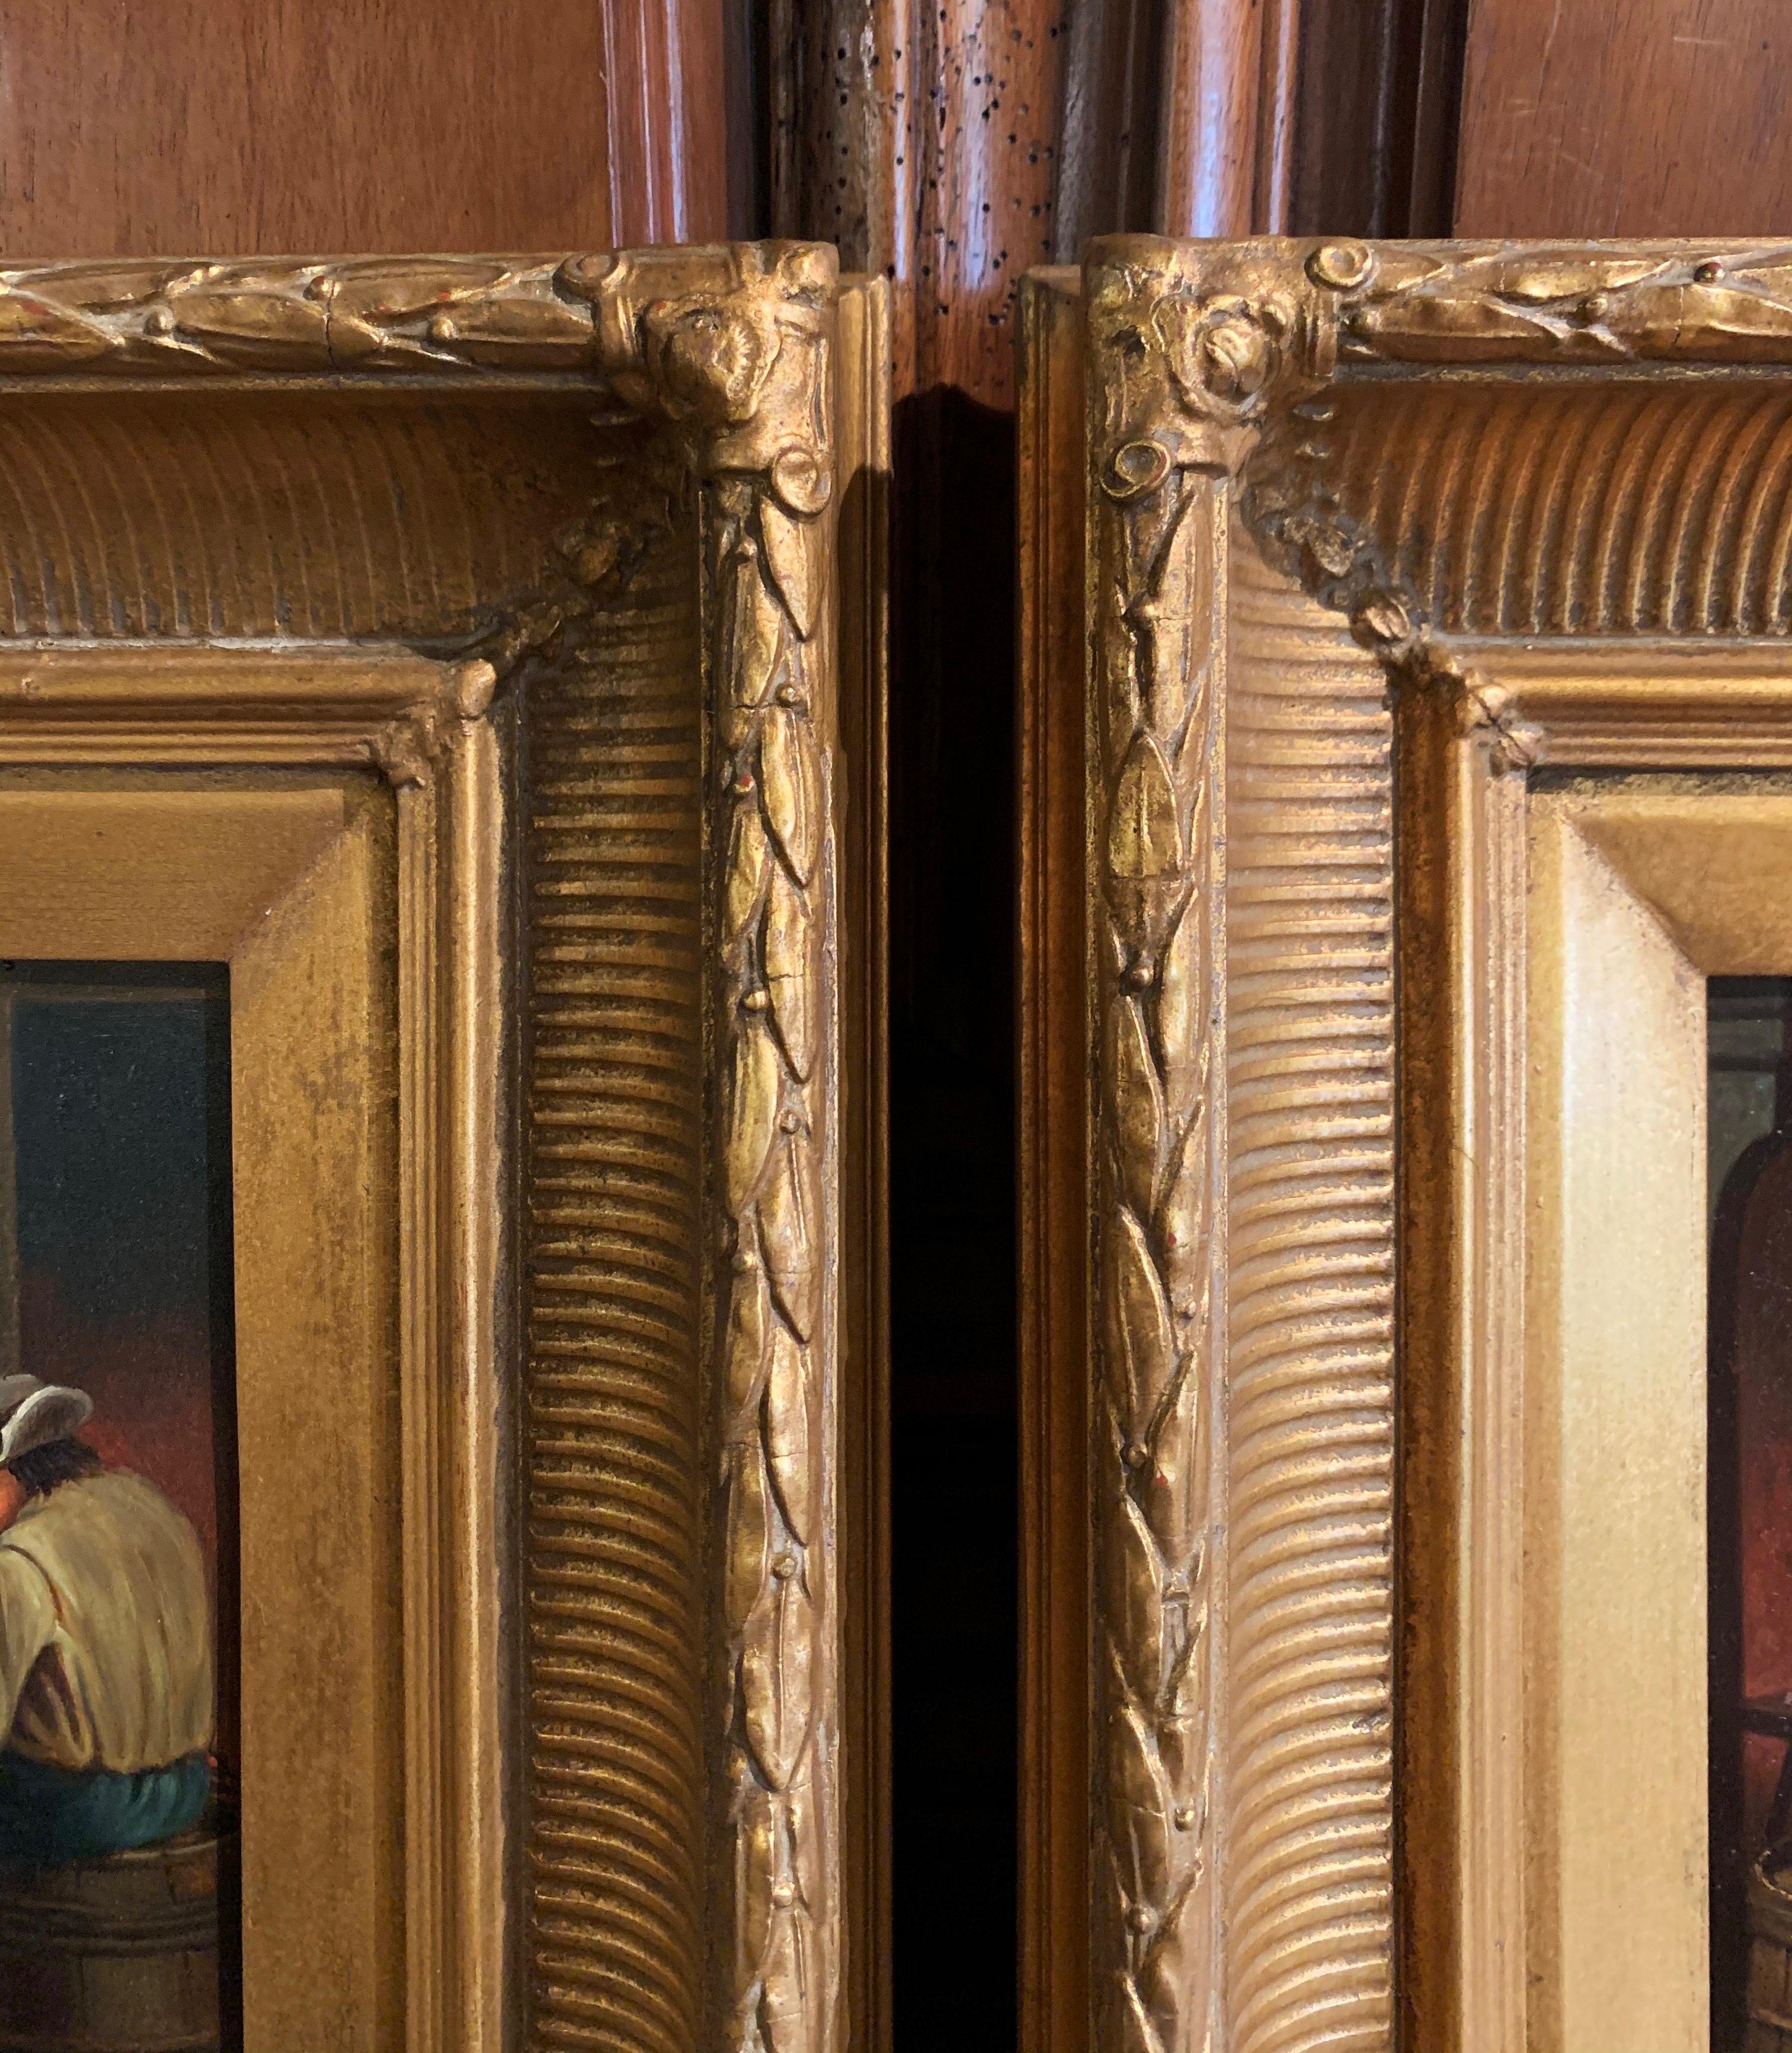 gilt frames for oil paintings